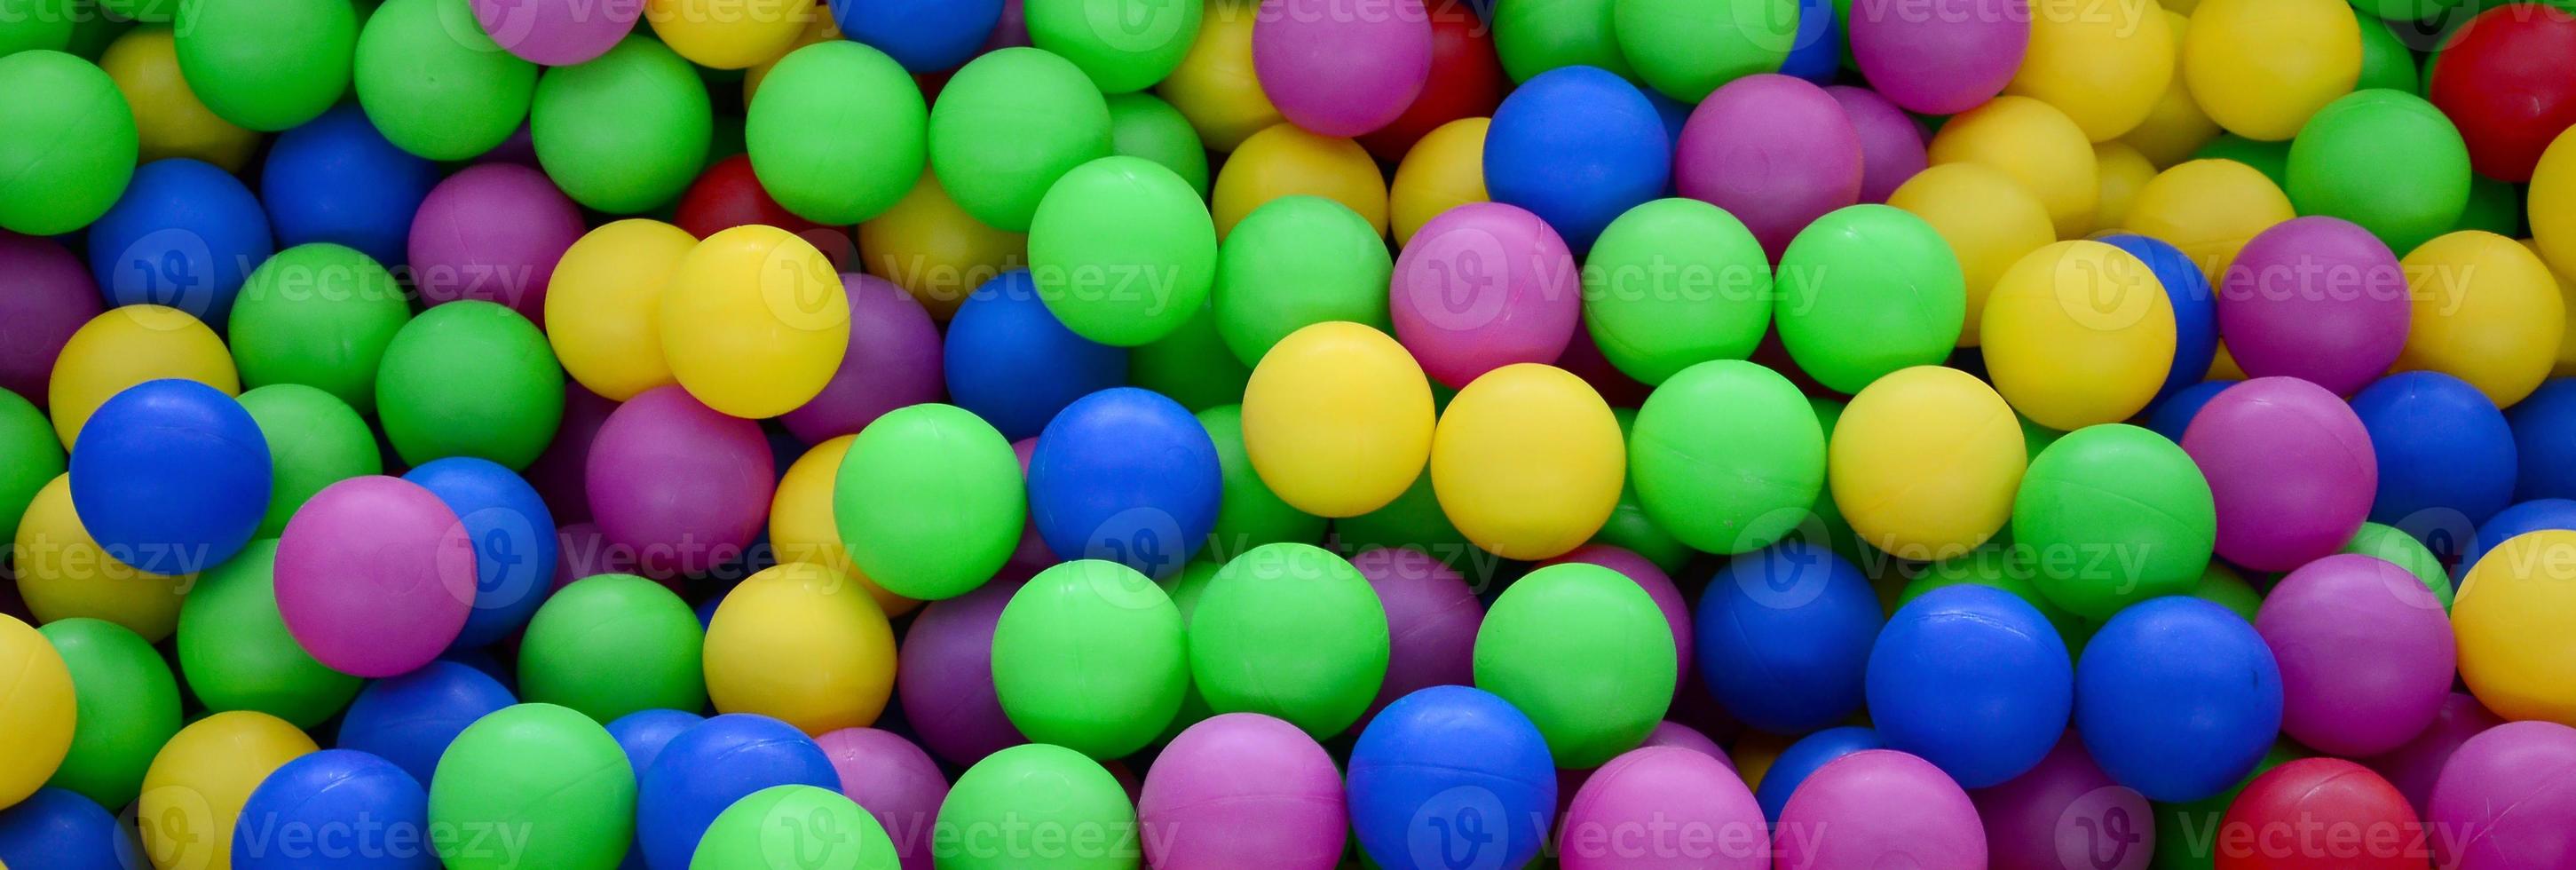 piscina para divertirse y saltar en bolas de plástico de colores foto